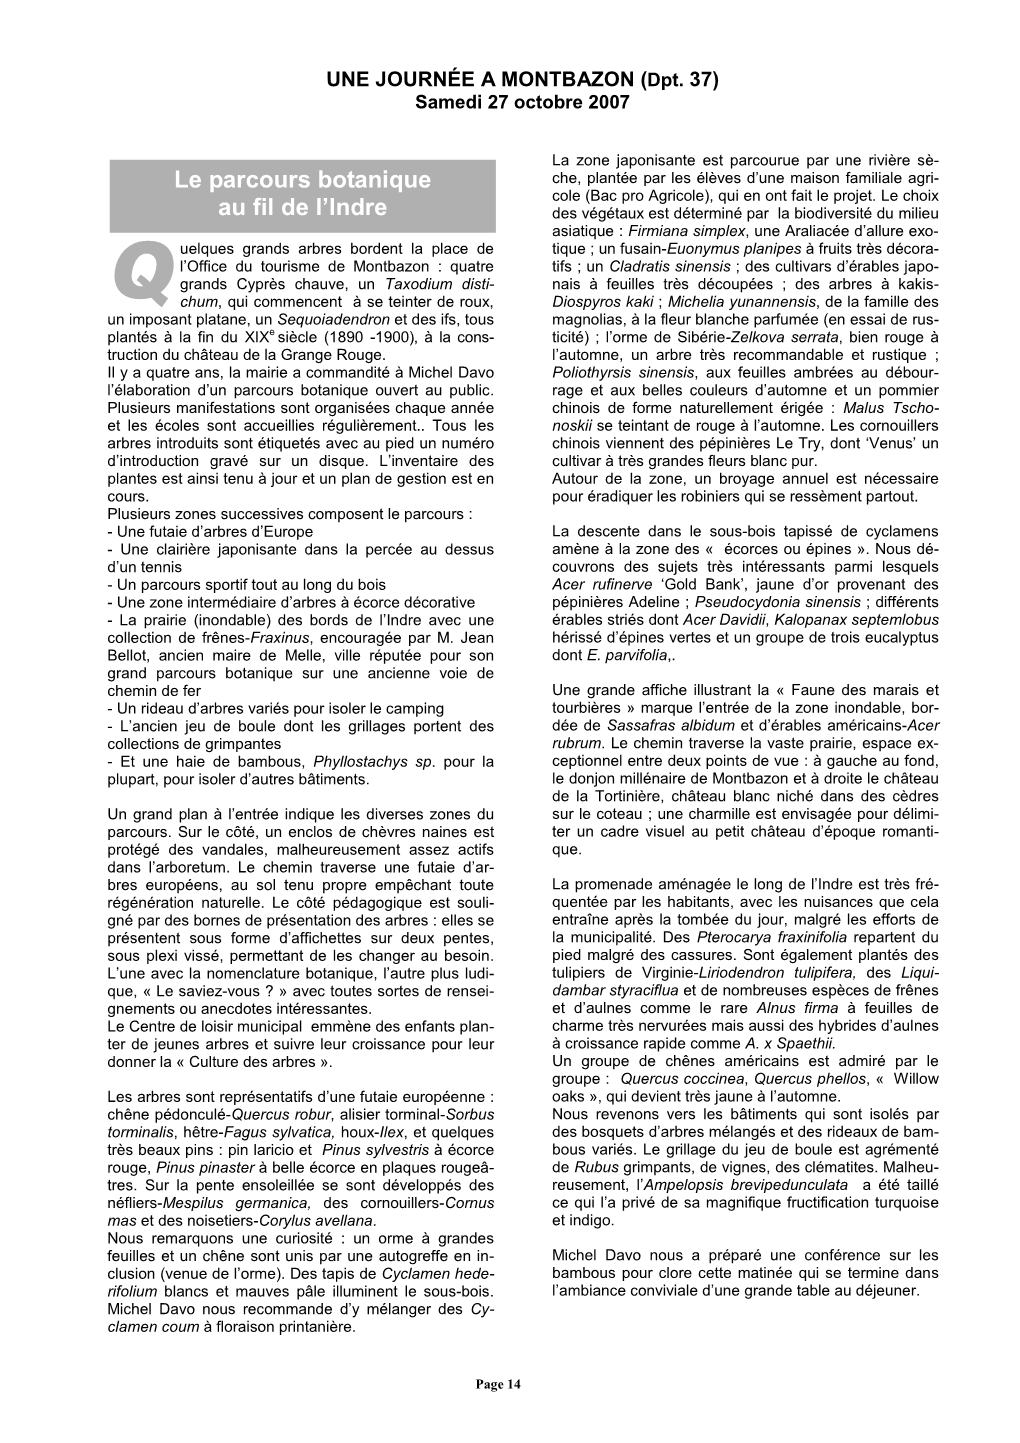 Bulletin Decembre 2007 Pages 14 a 19.Pdf